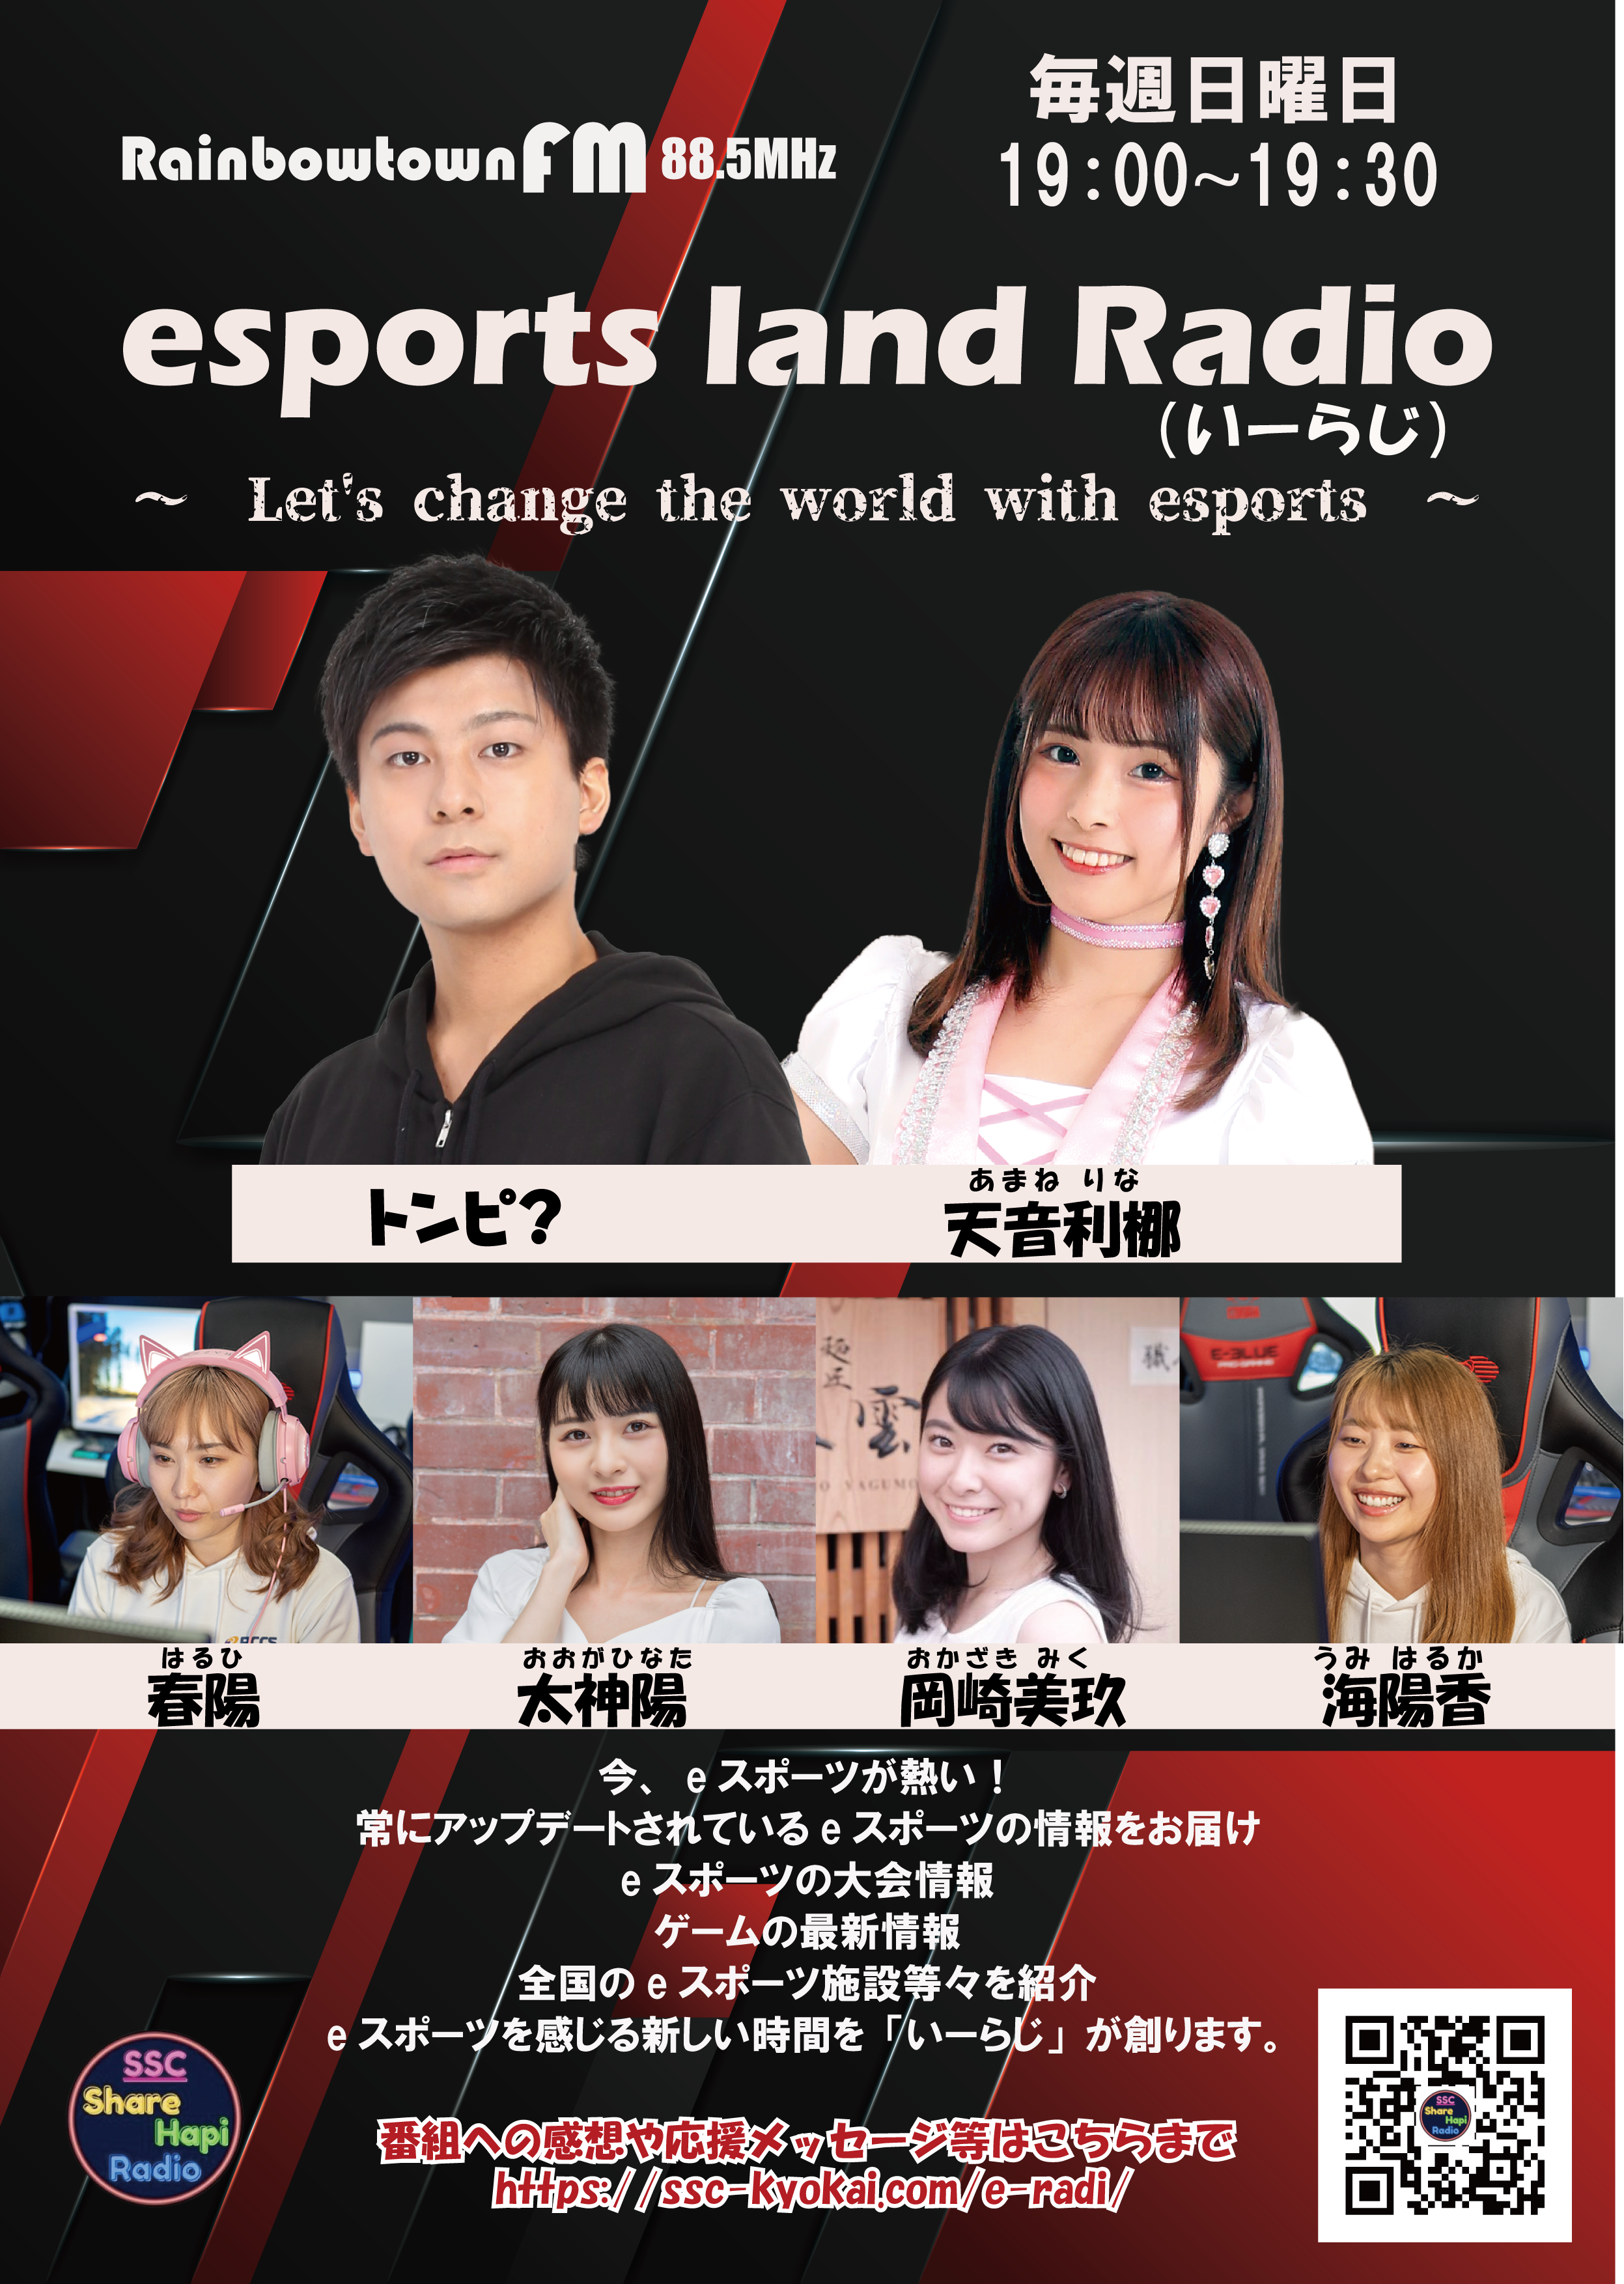 eスポーツ特化型ラジオ「esports land Radio」がスタート！